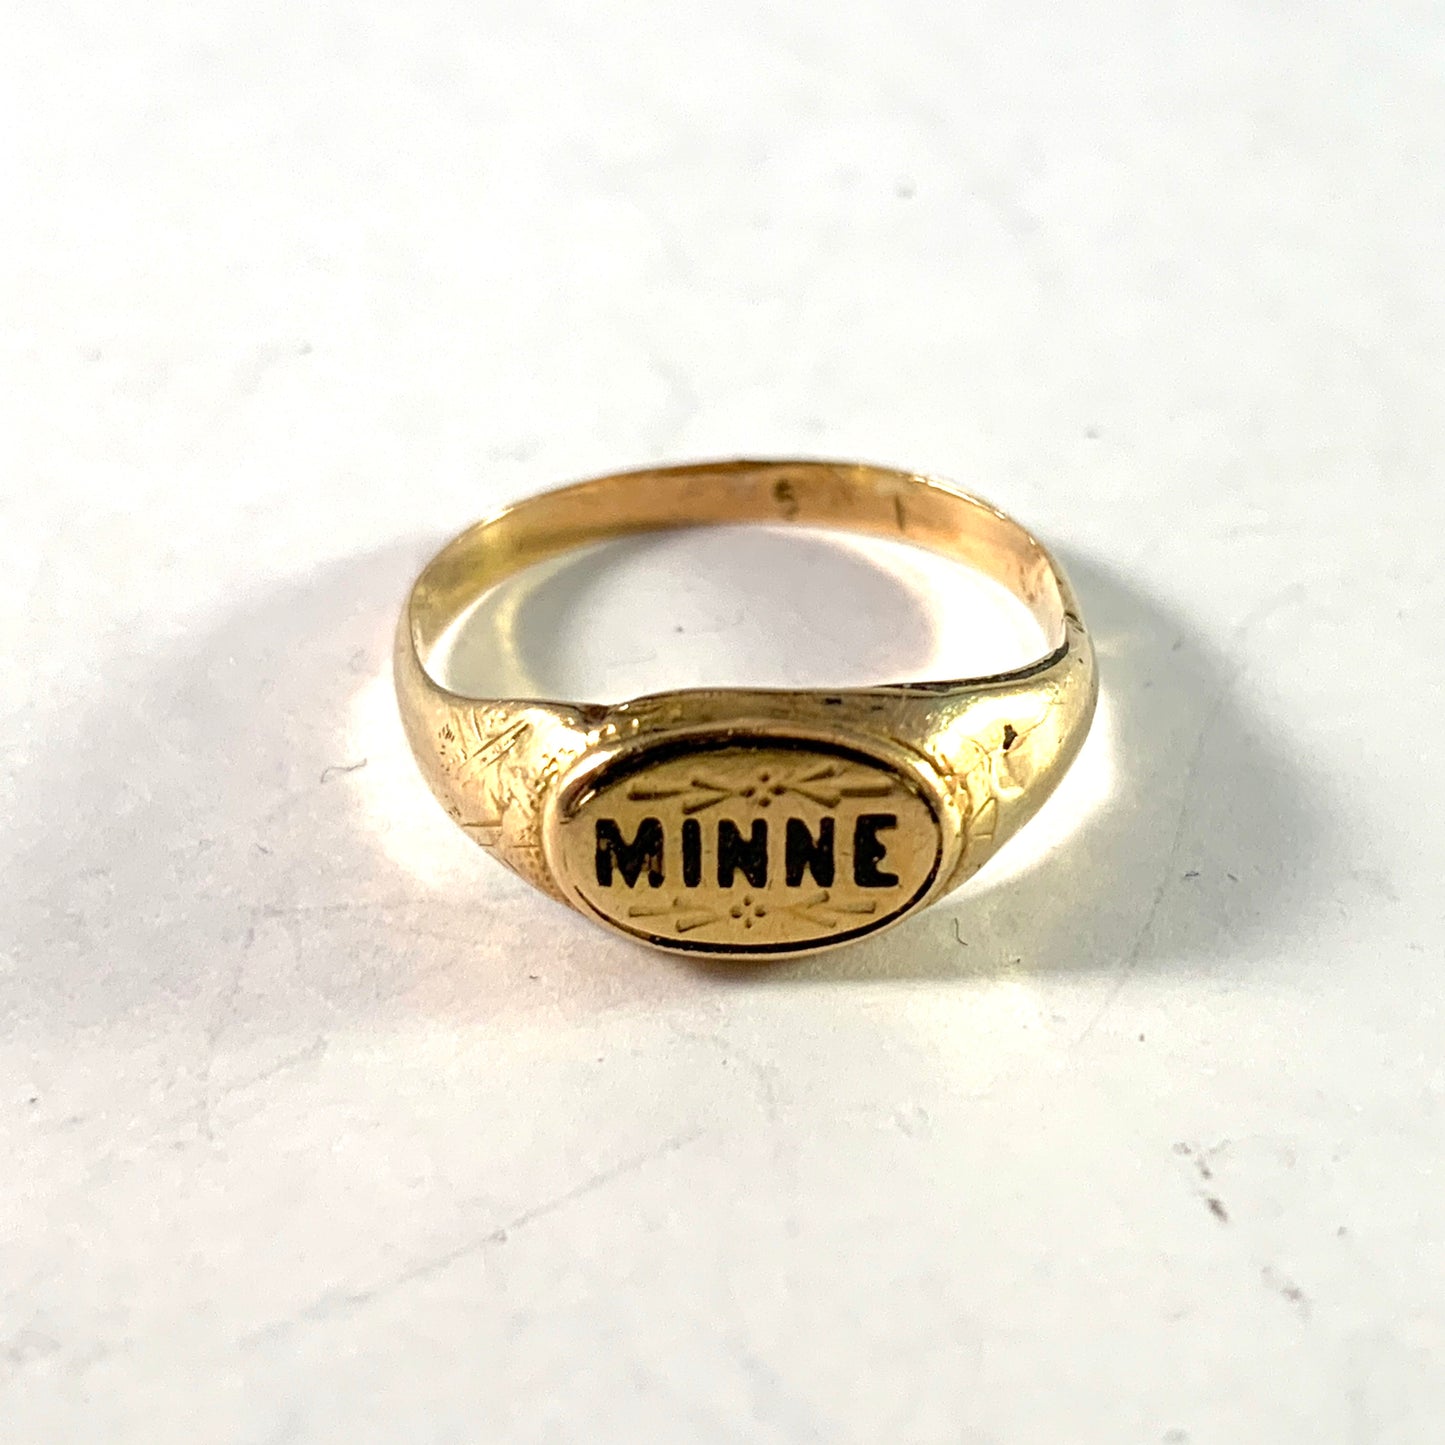 Sweden, Antique 18k Gold Enamel Memory Mourning Ring.